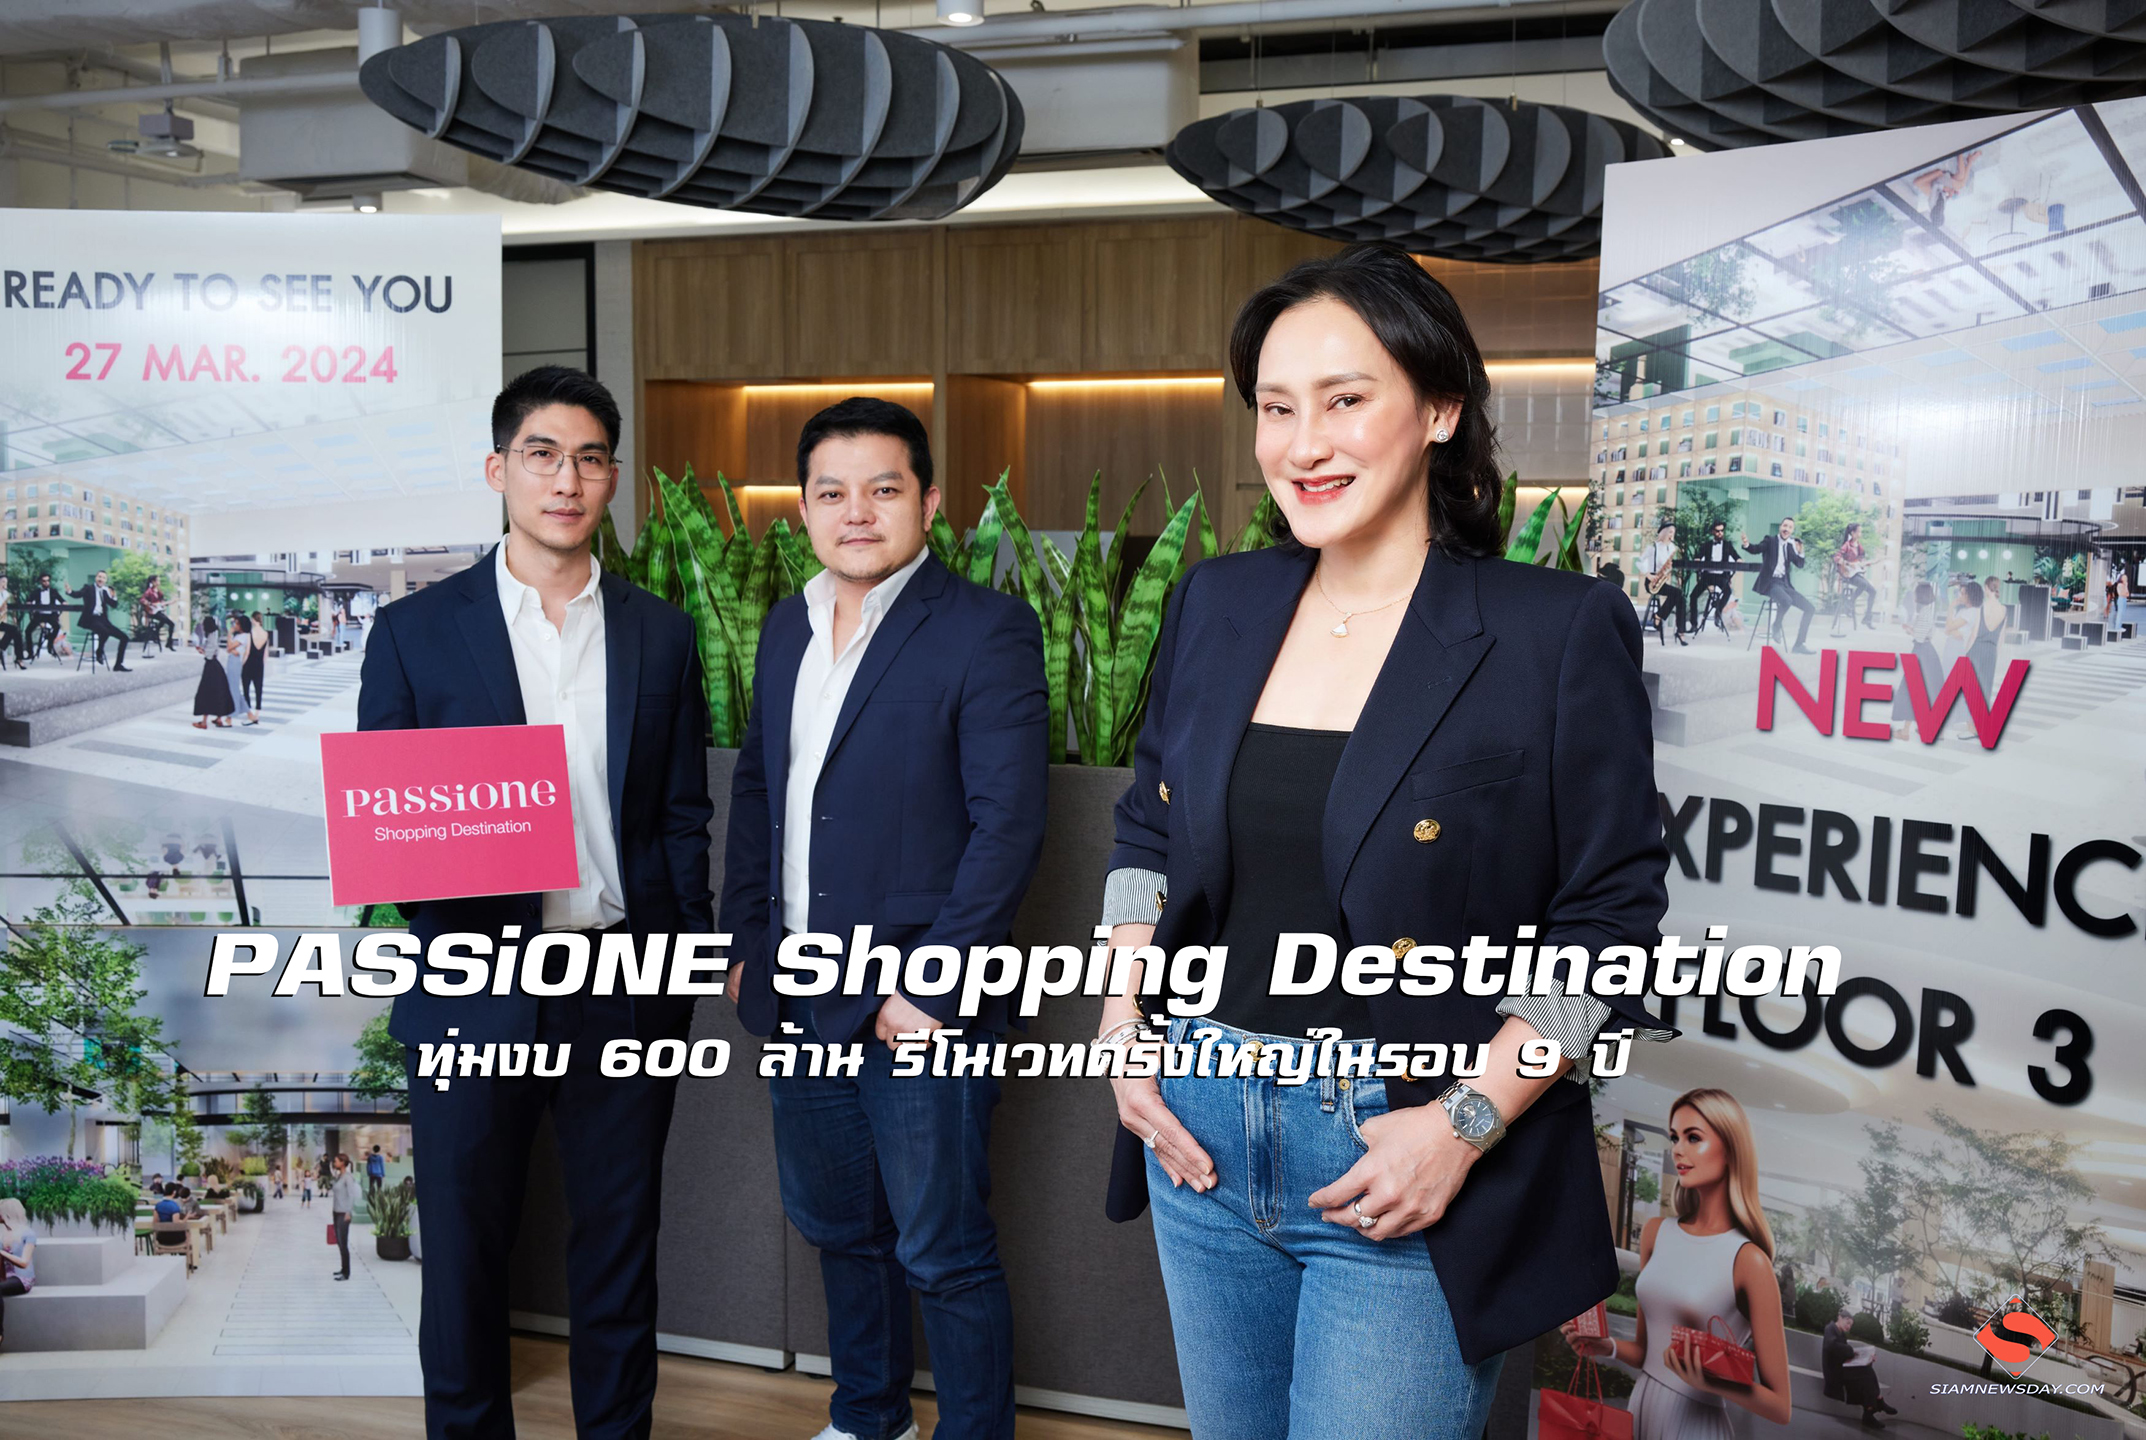 PASSiONE Shopping Destination ทุ่มงบ 600 ล้าน รีโนเวทครั้งใหญ่ในรอบ 9 ปี